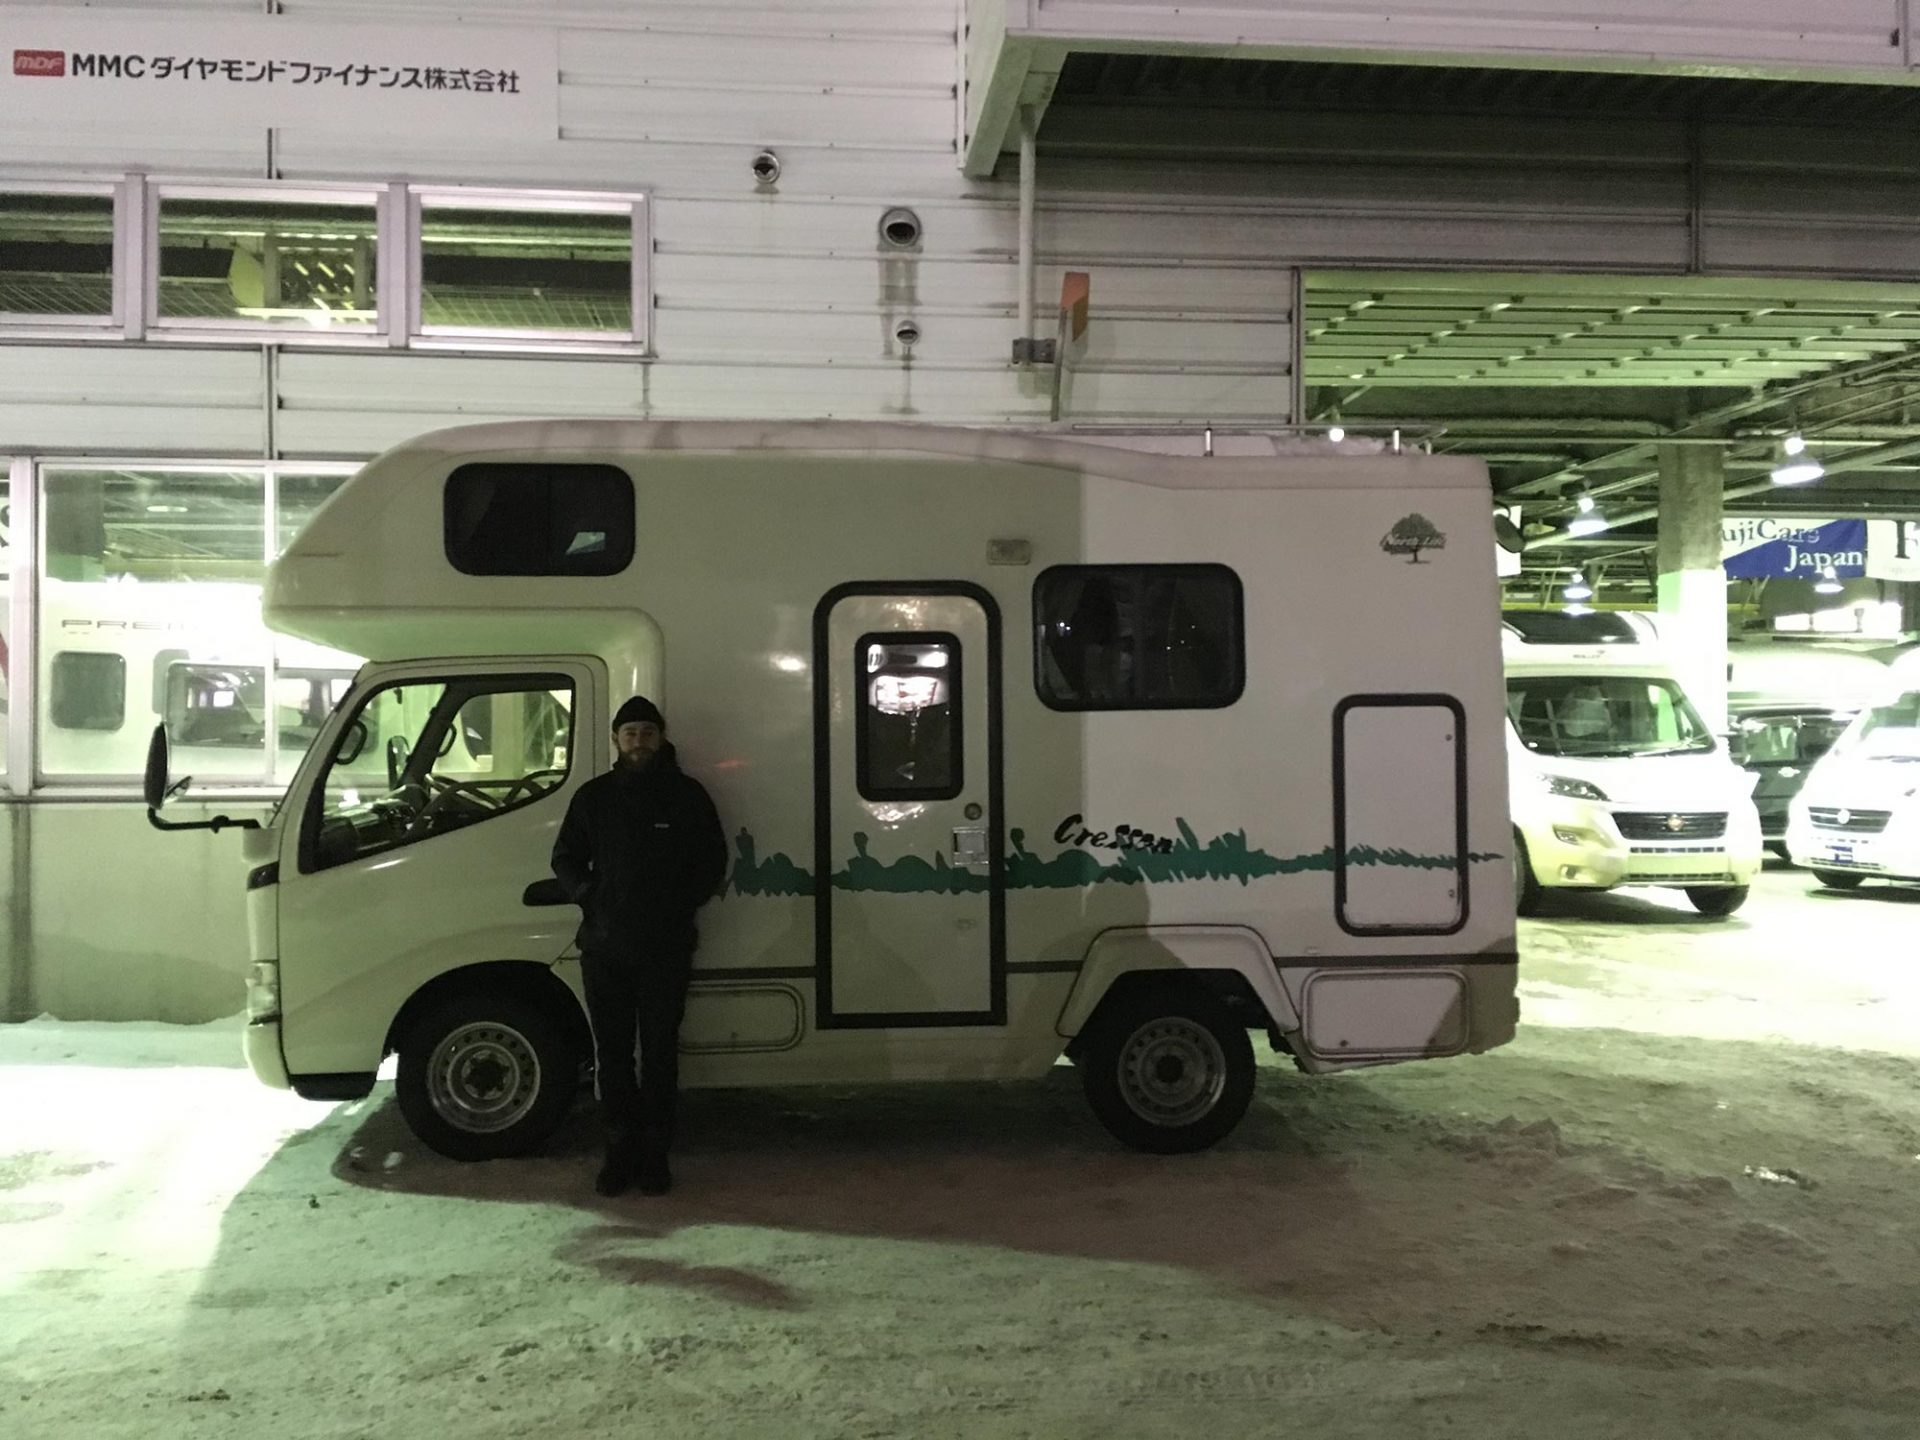 Japanese camper van rental in Sapporo.